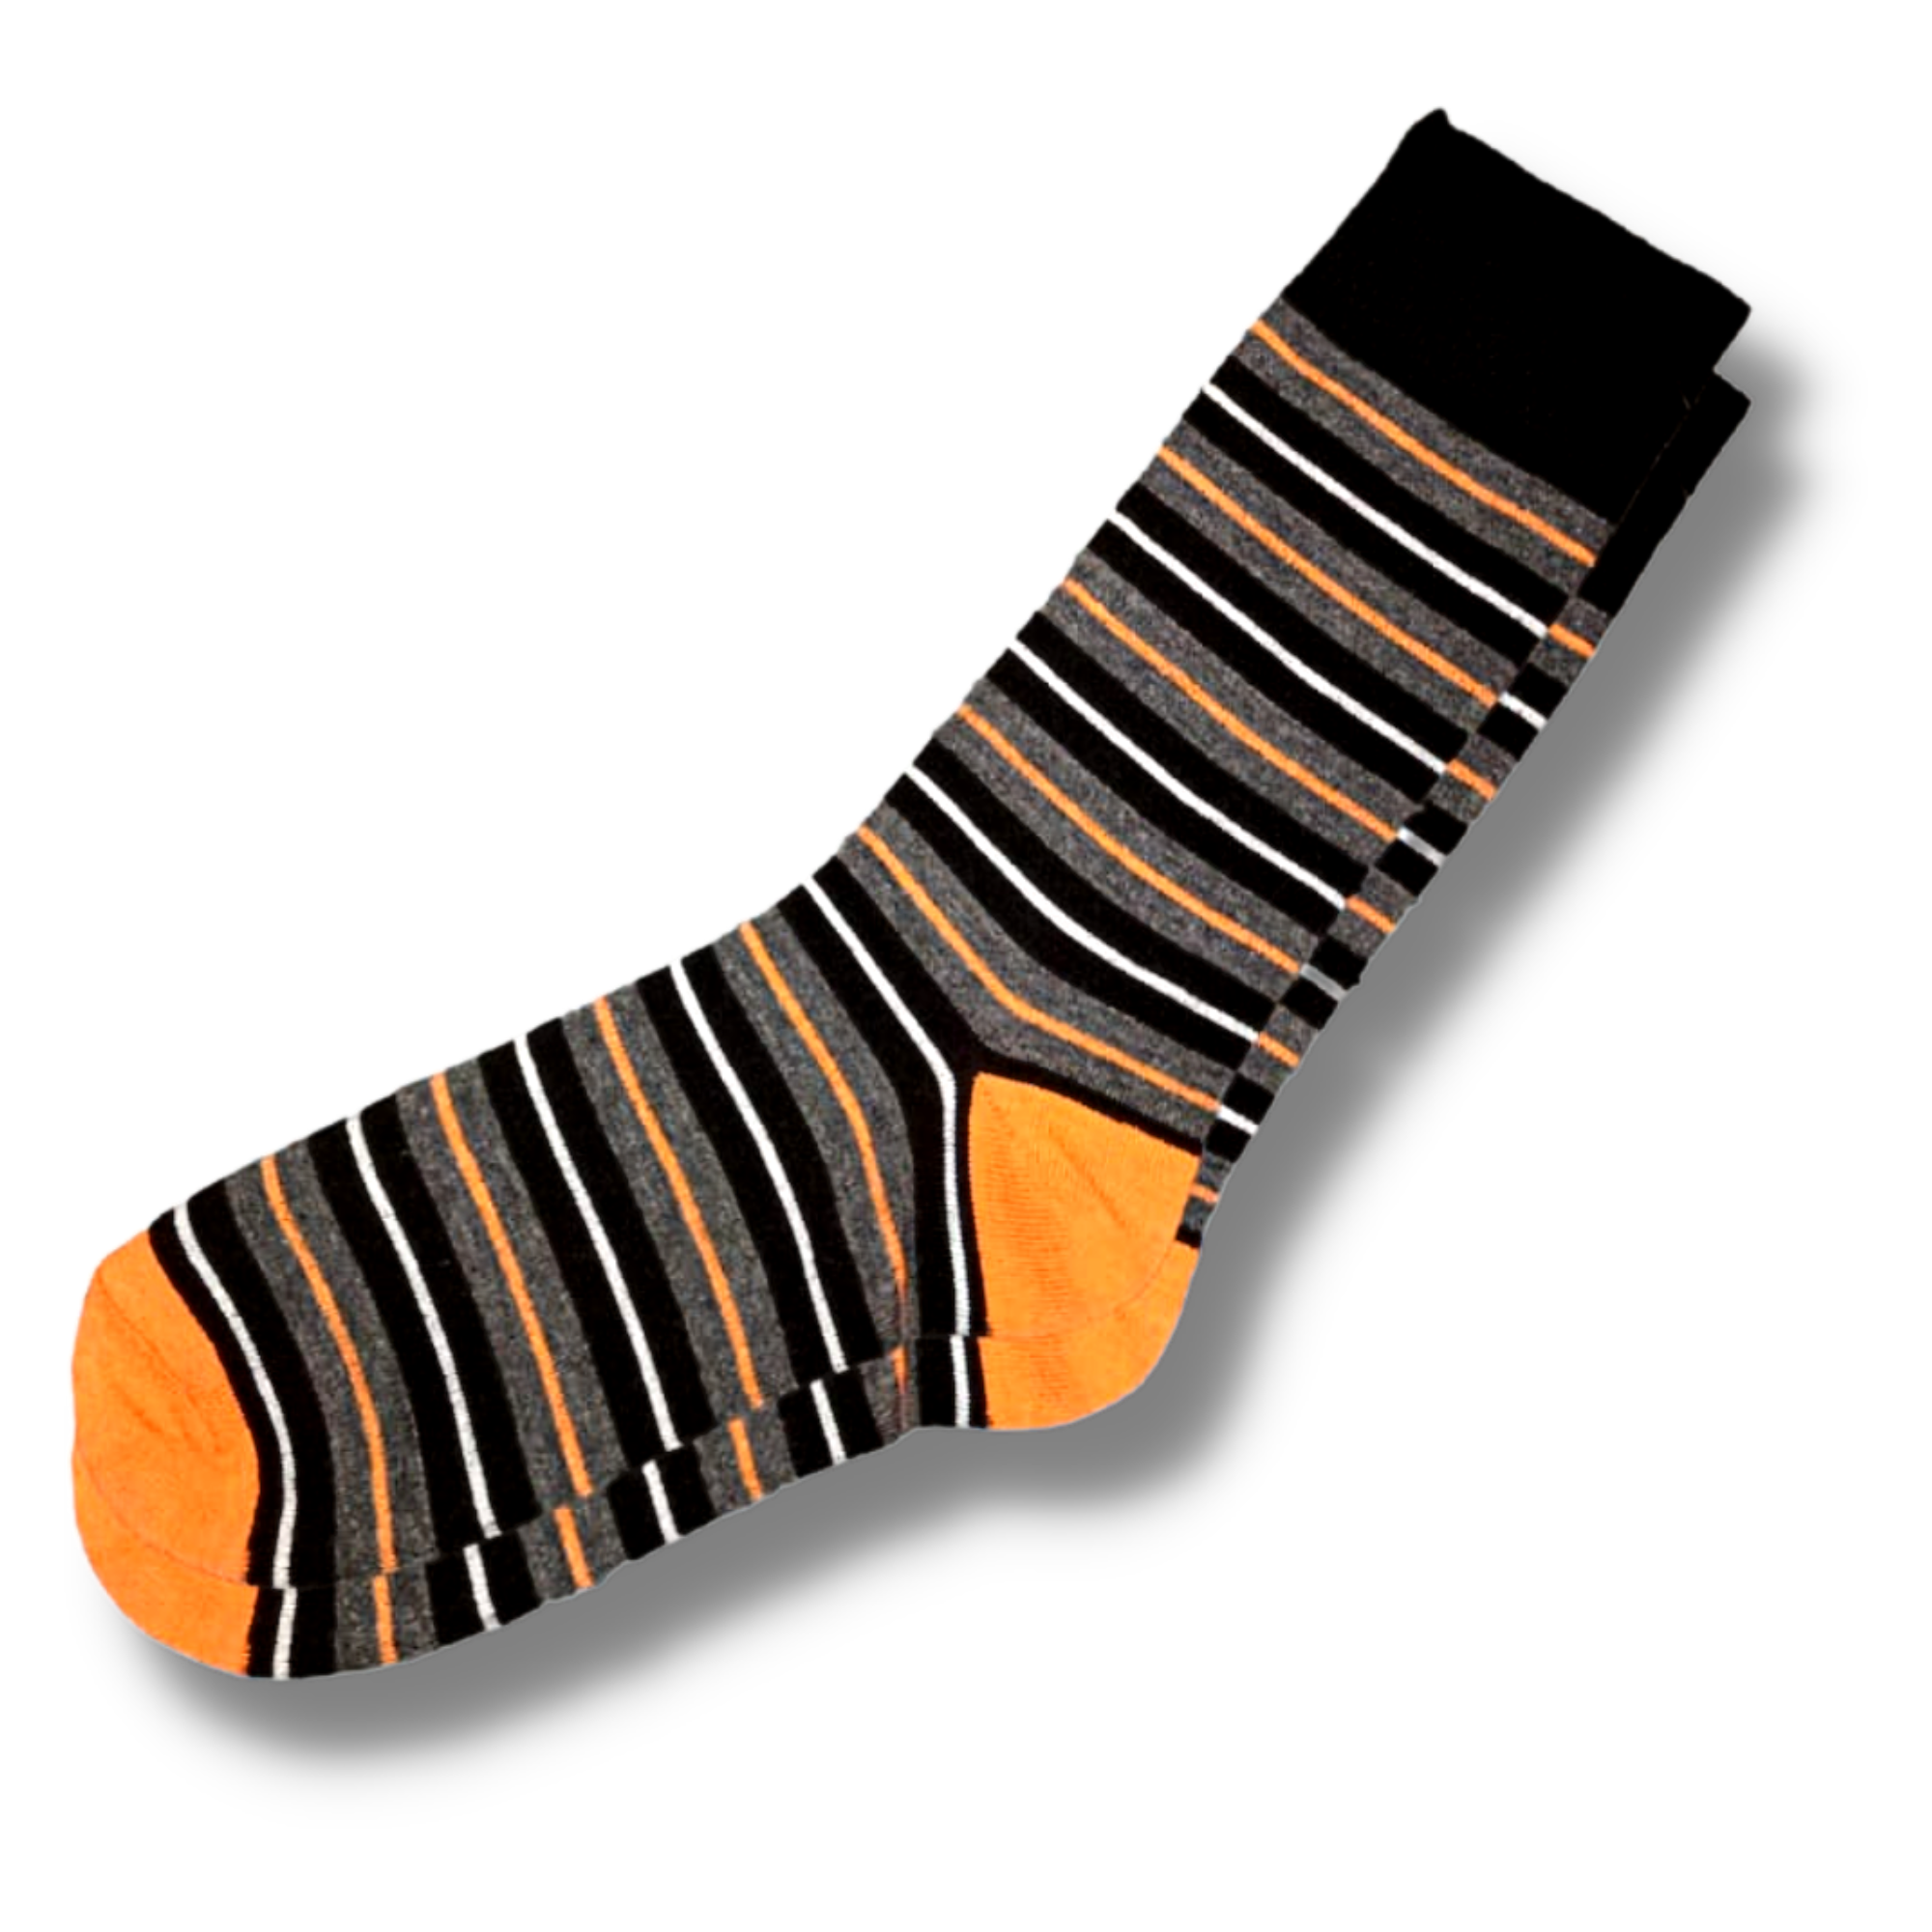 Grey & Orange Striped Men's Socks (Size 6-11)